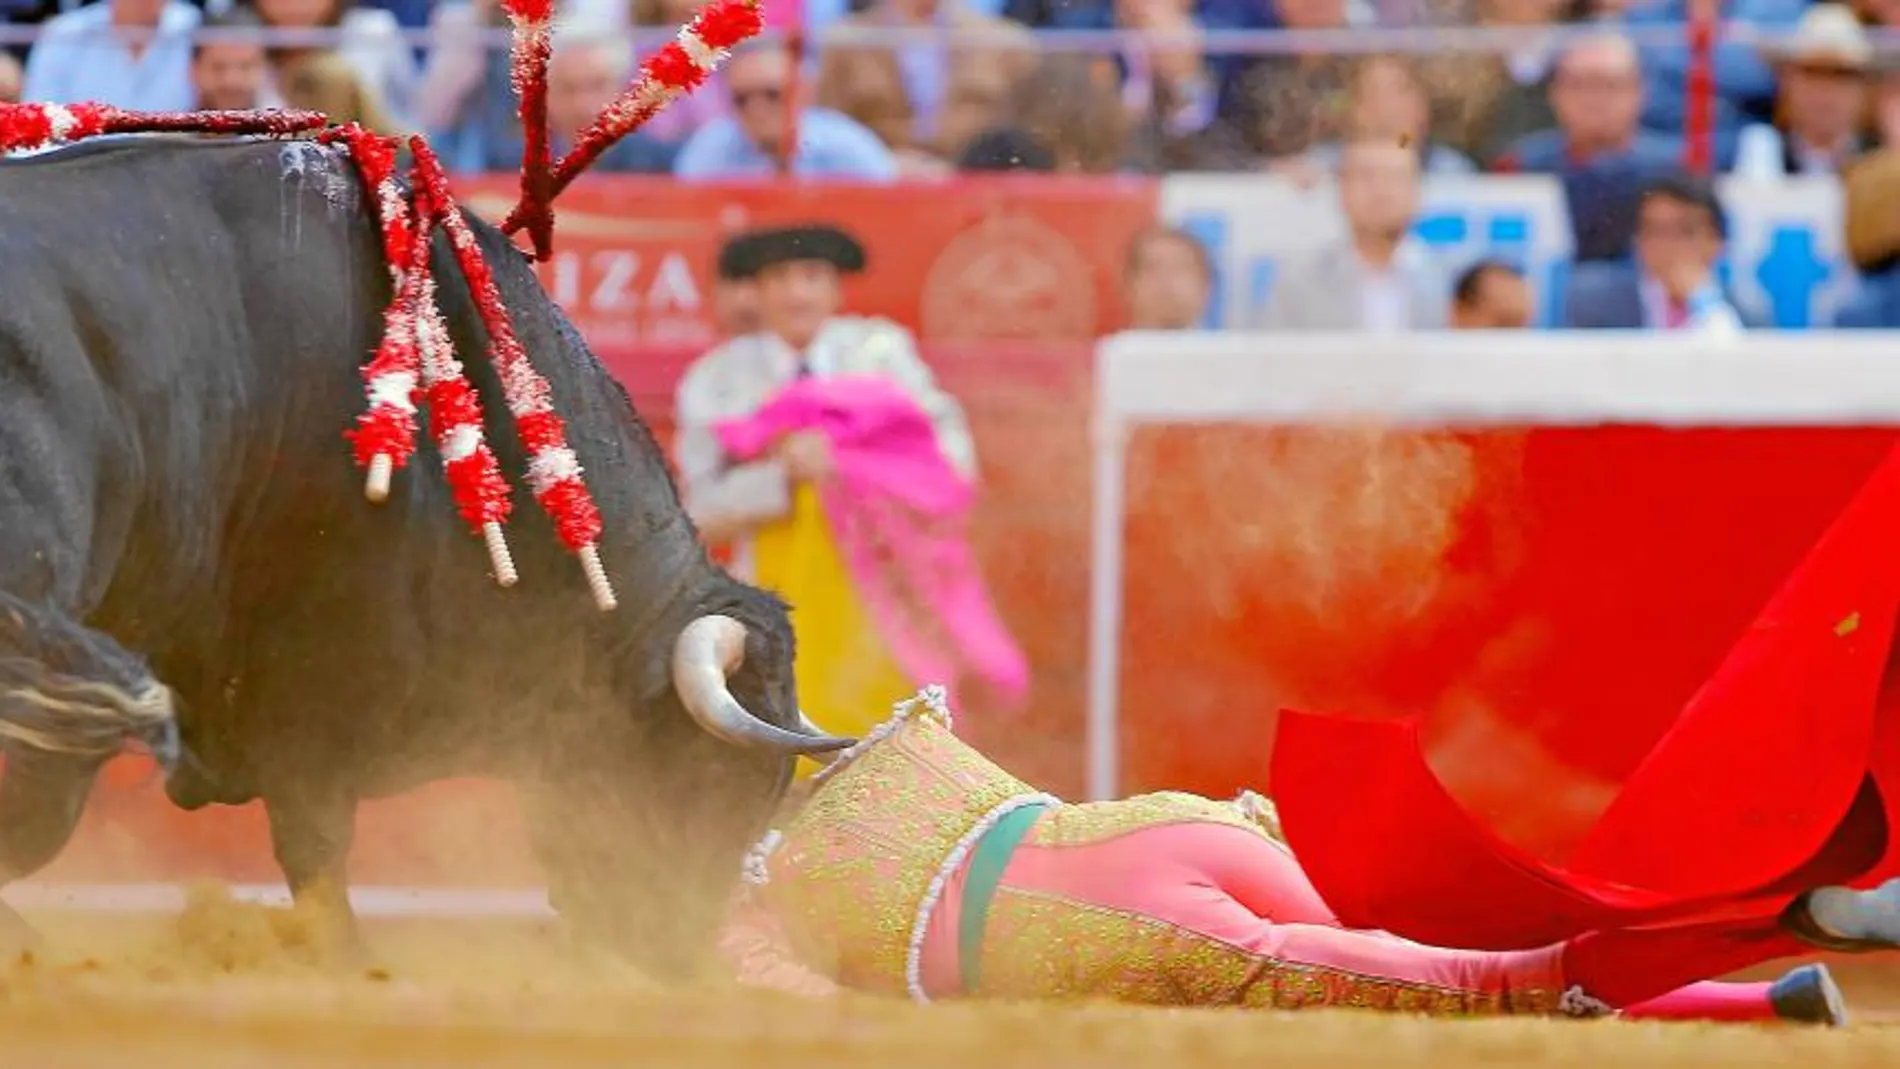 El matador de toros madrileño José Tomás fue volteado sin consecuencias por el primer toro del festejo, el pasado domingo en la Monumental de México